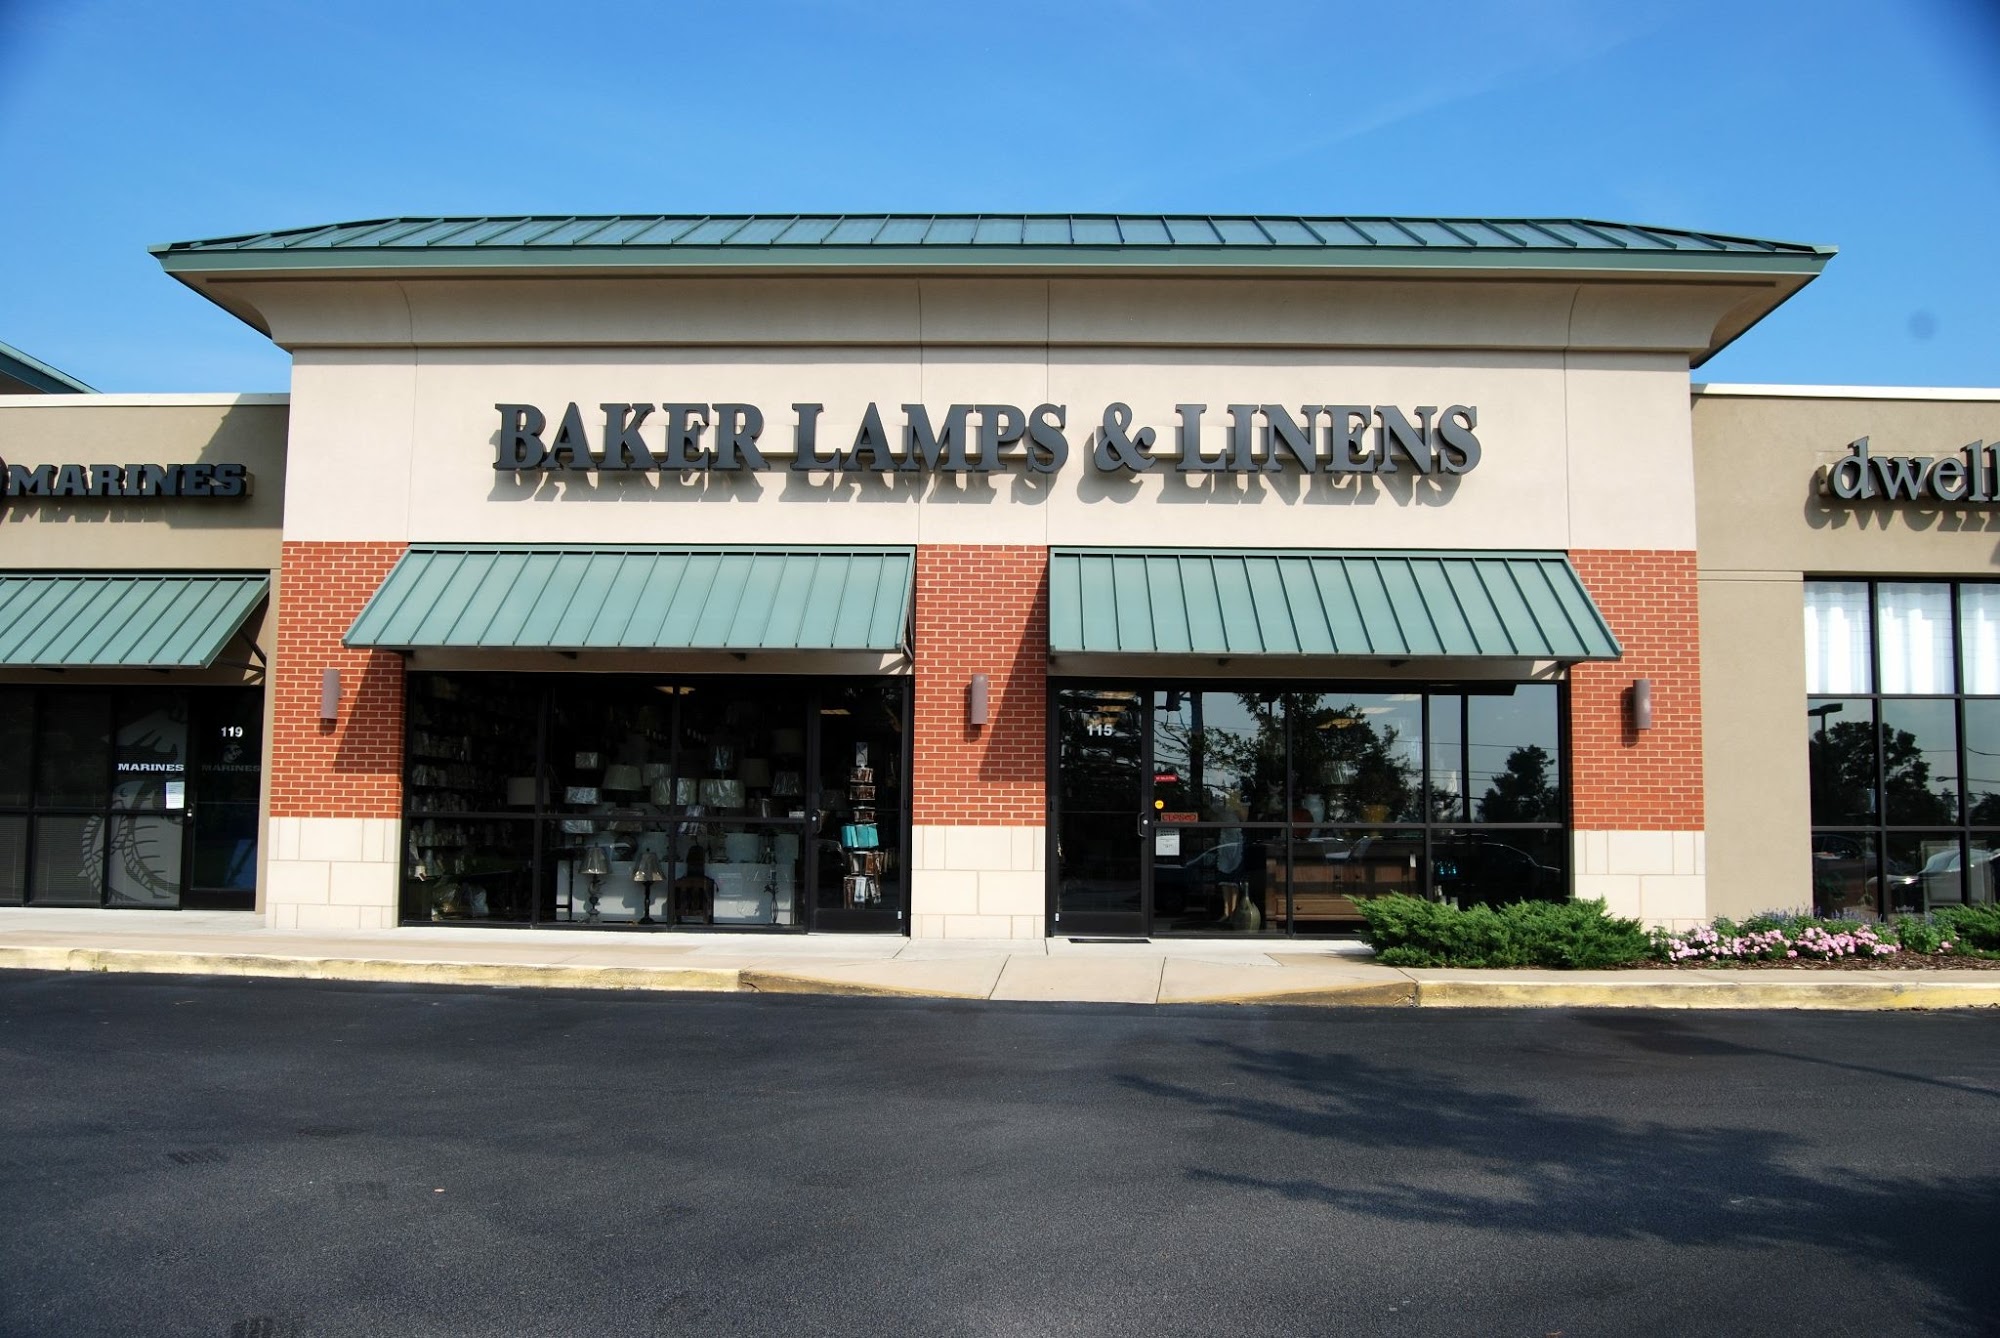 Baker Lamps & Linens